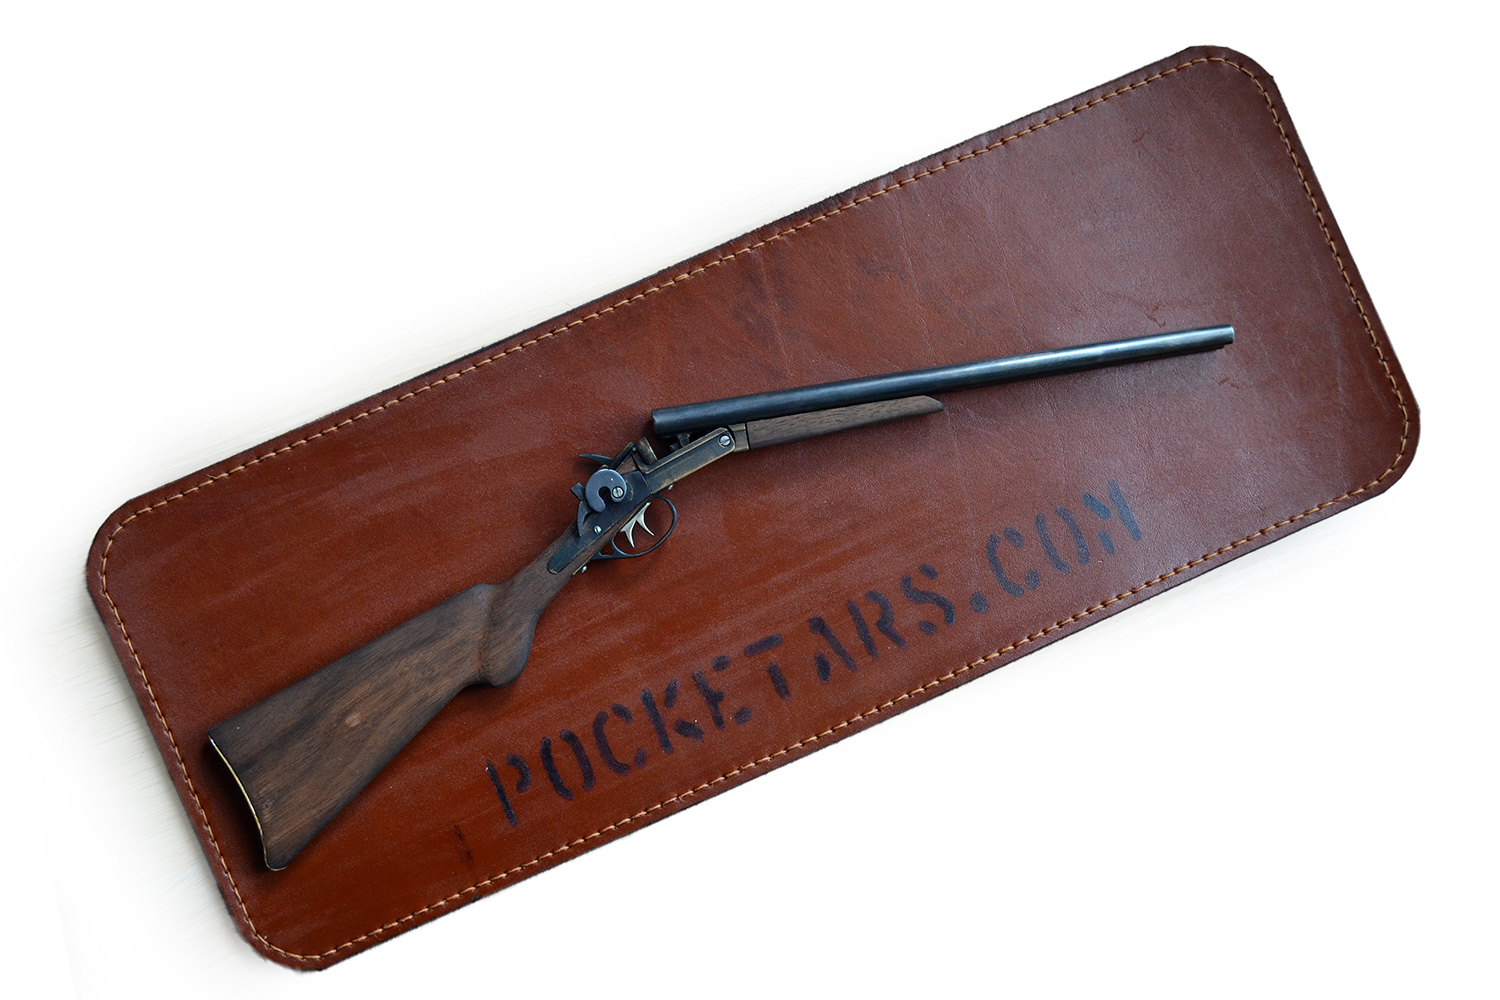 Model Wyatt Earp shotgun on a scale of 1:2,5